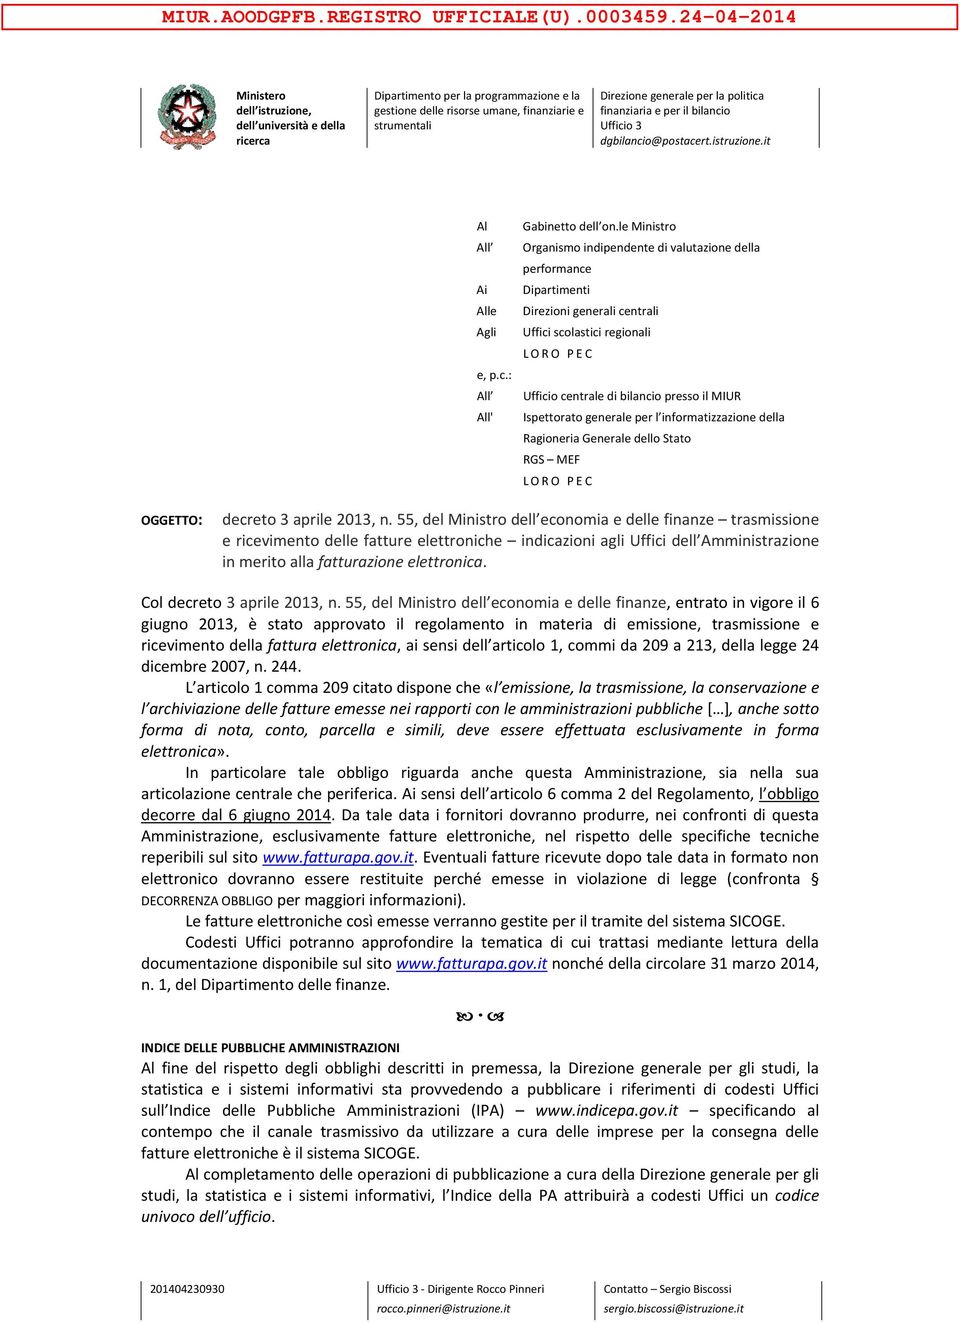 Ispettorato generale per l informatizzazione della Ragioneria Generale dello Stato RGS MEF LORO PEC OGGETTO: decreto 3 aprile 2013, n.